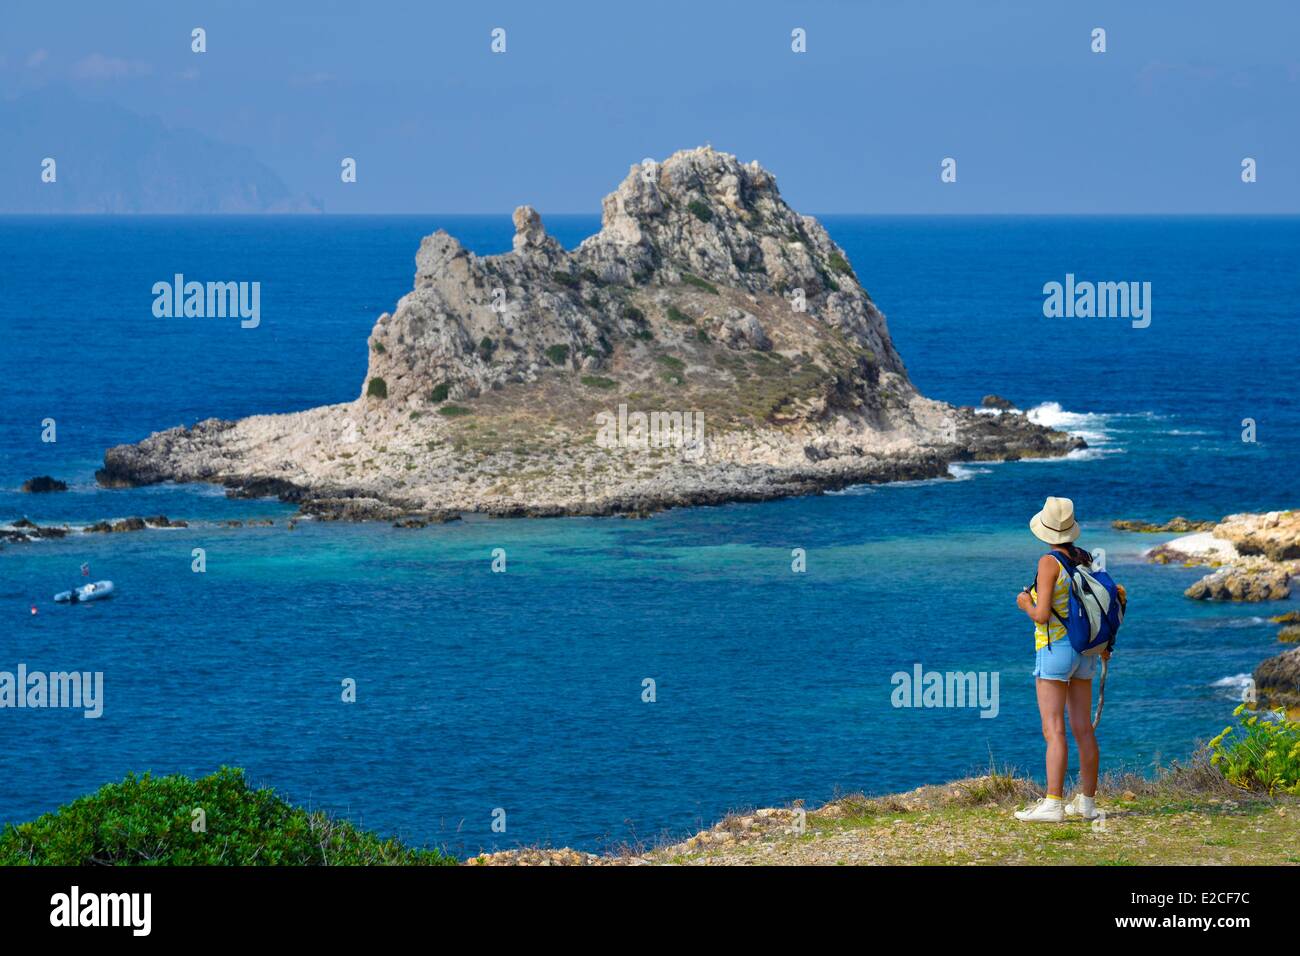 L'Italia, sicilia, isole Egadi, isola di Levanzo, escursionista su un sentiero costiero affacciato sul mare con isola Faraglione in background Foto Stock